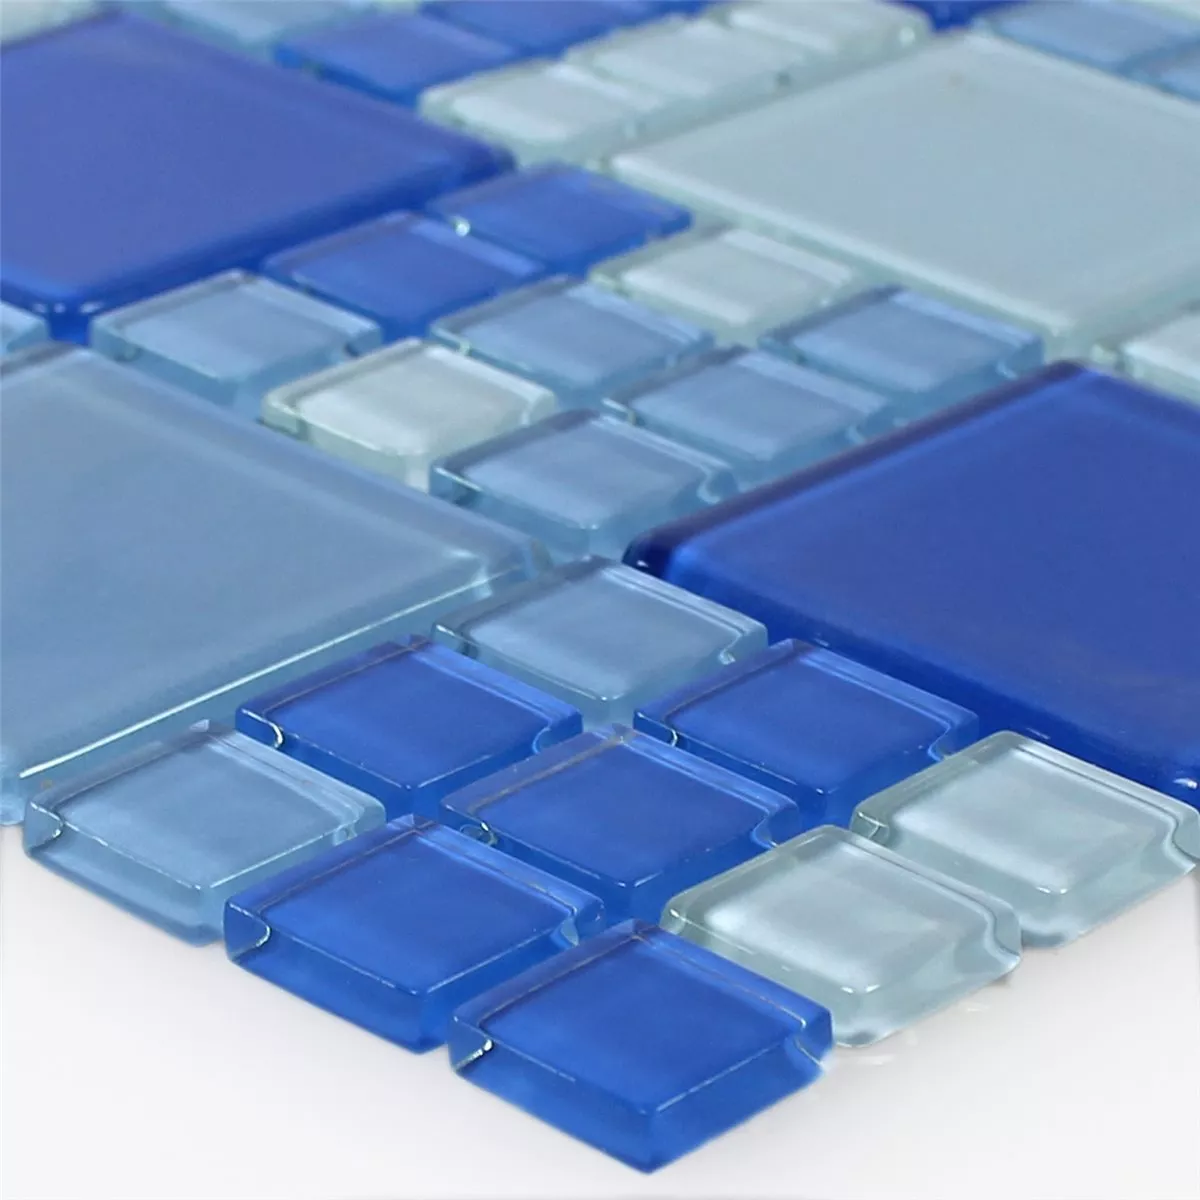 Sample Glasmozaïek Tegels Blauw Lichtblauw Mix